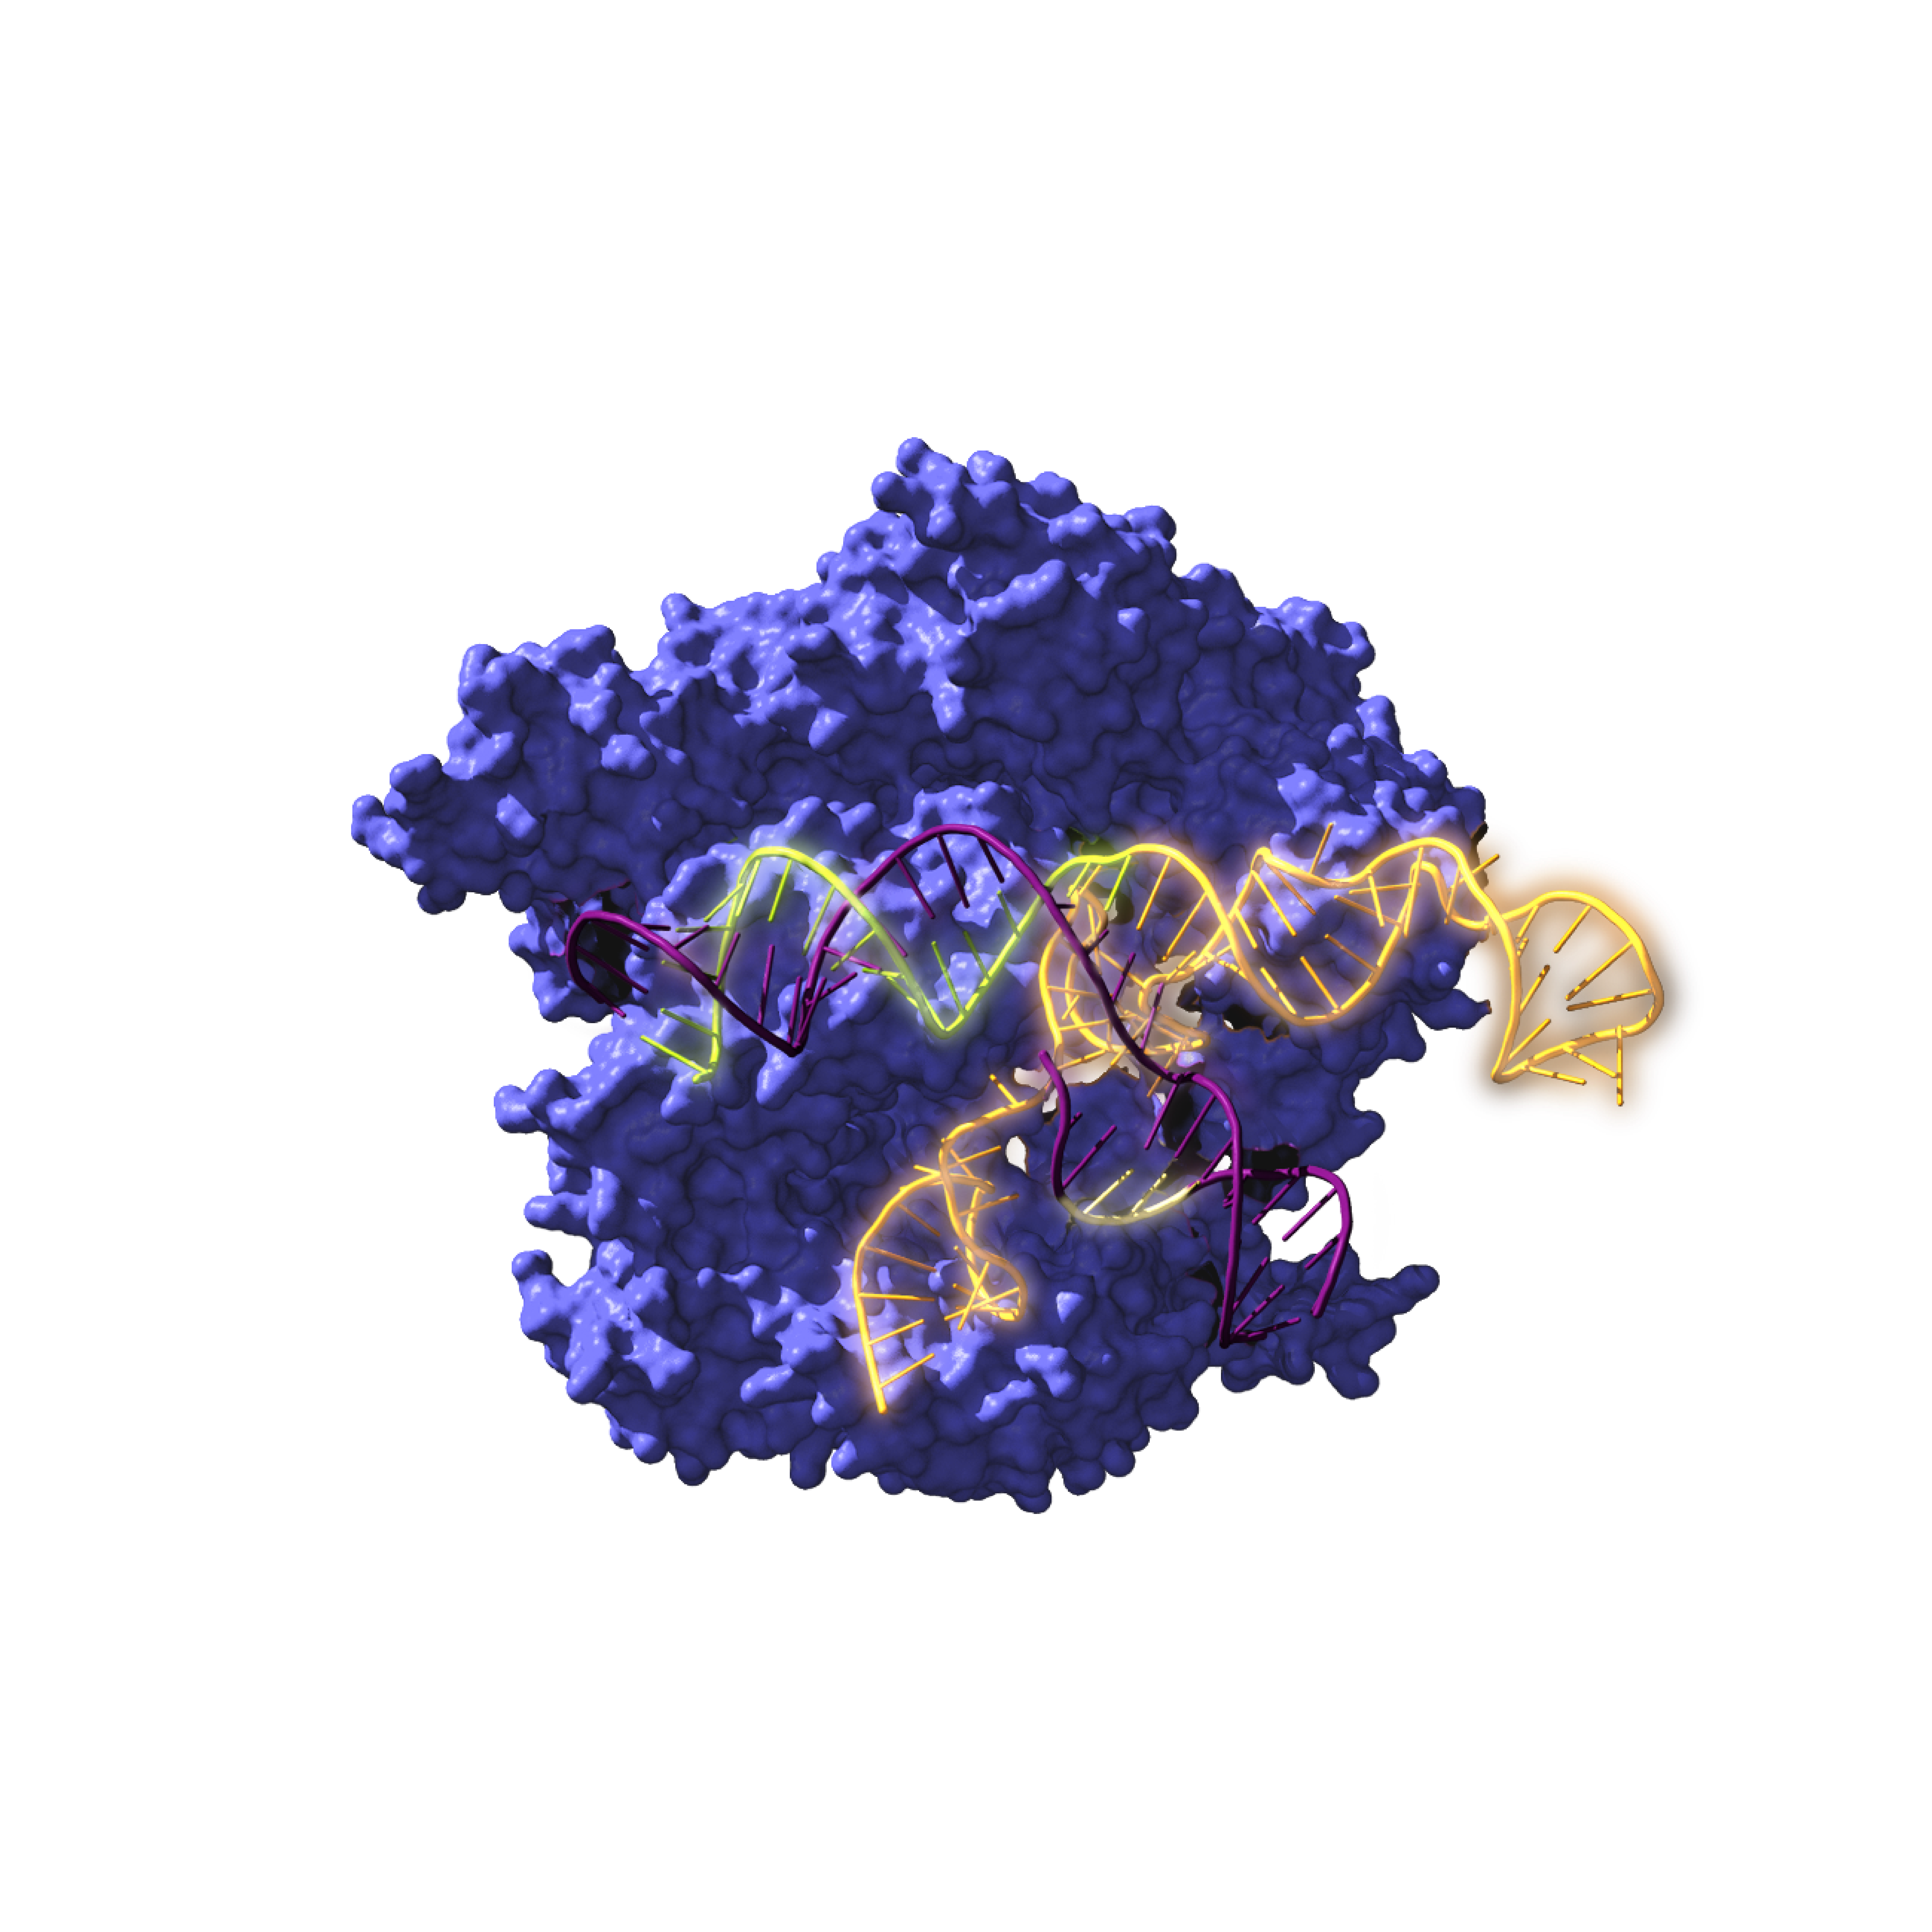 Cas9ren irudia, CRISPR sistemarekin lotutako entzima endonukleasa bat, DNA objektiboaren gainean jarduten / Antonio Reifs (CIC nanoGUNE)